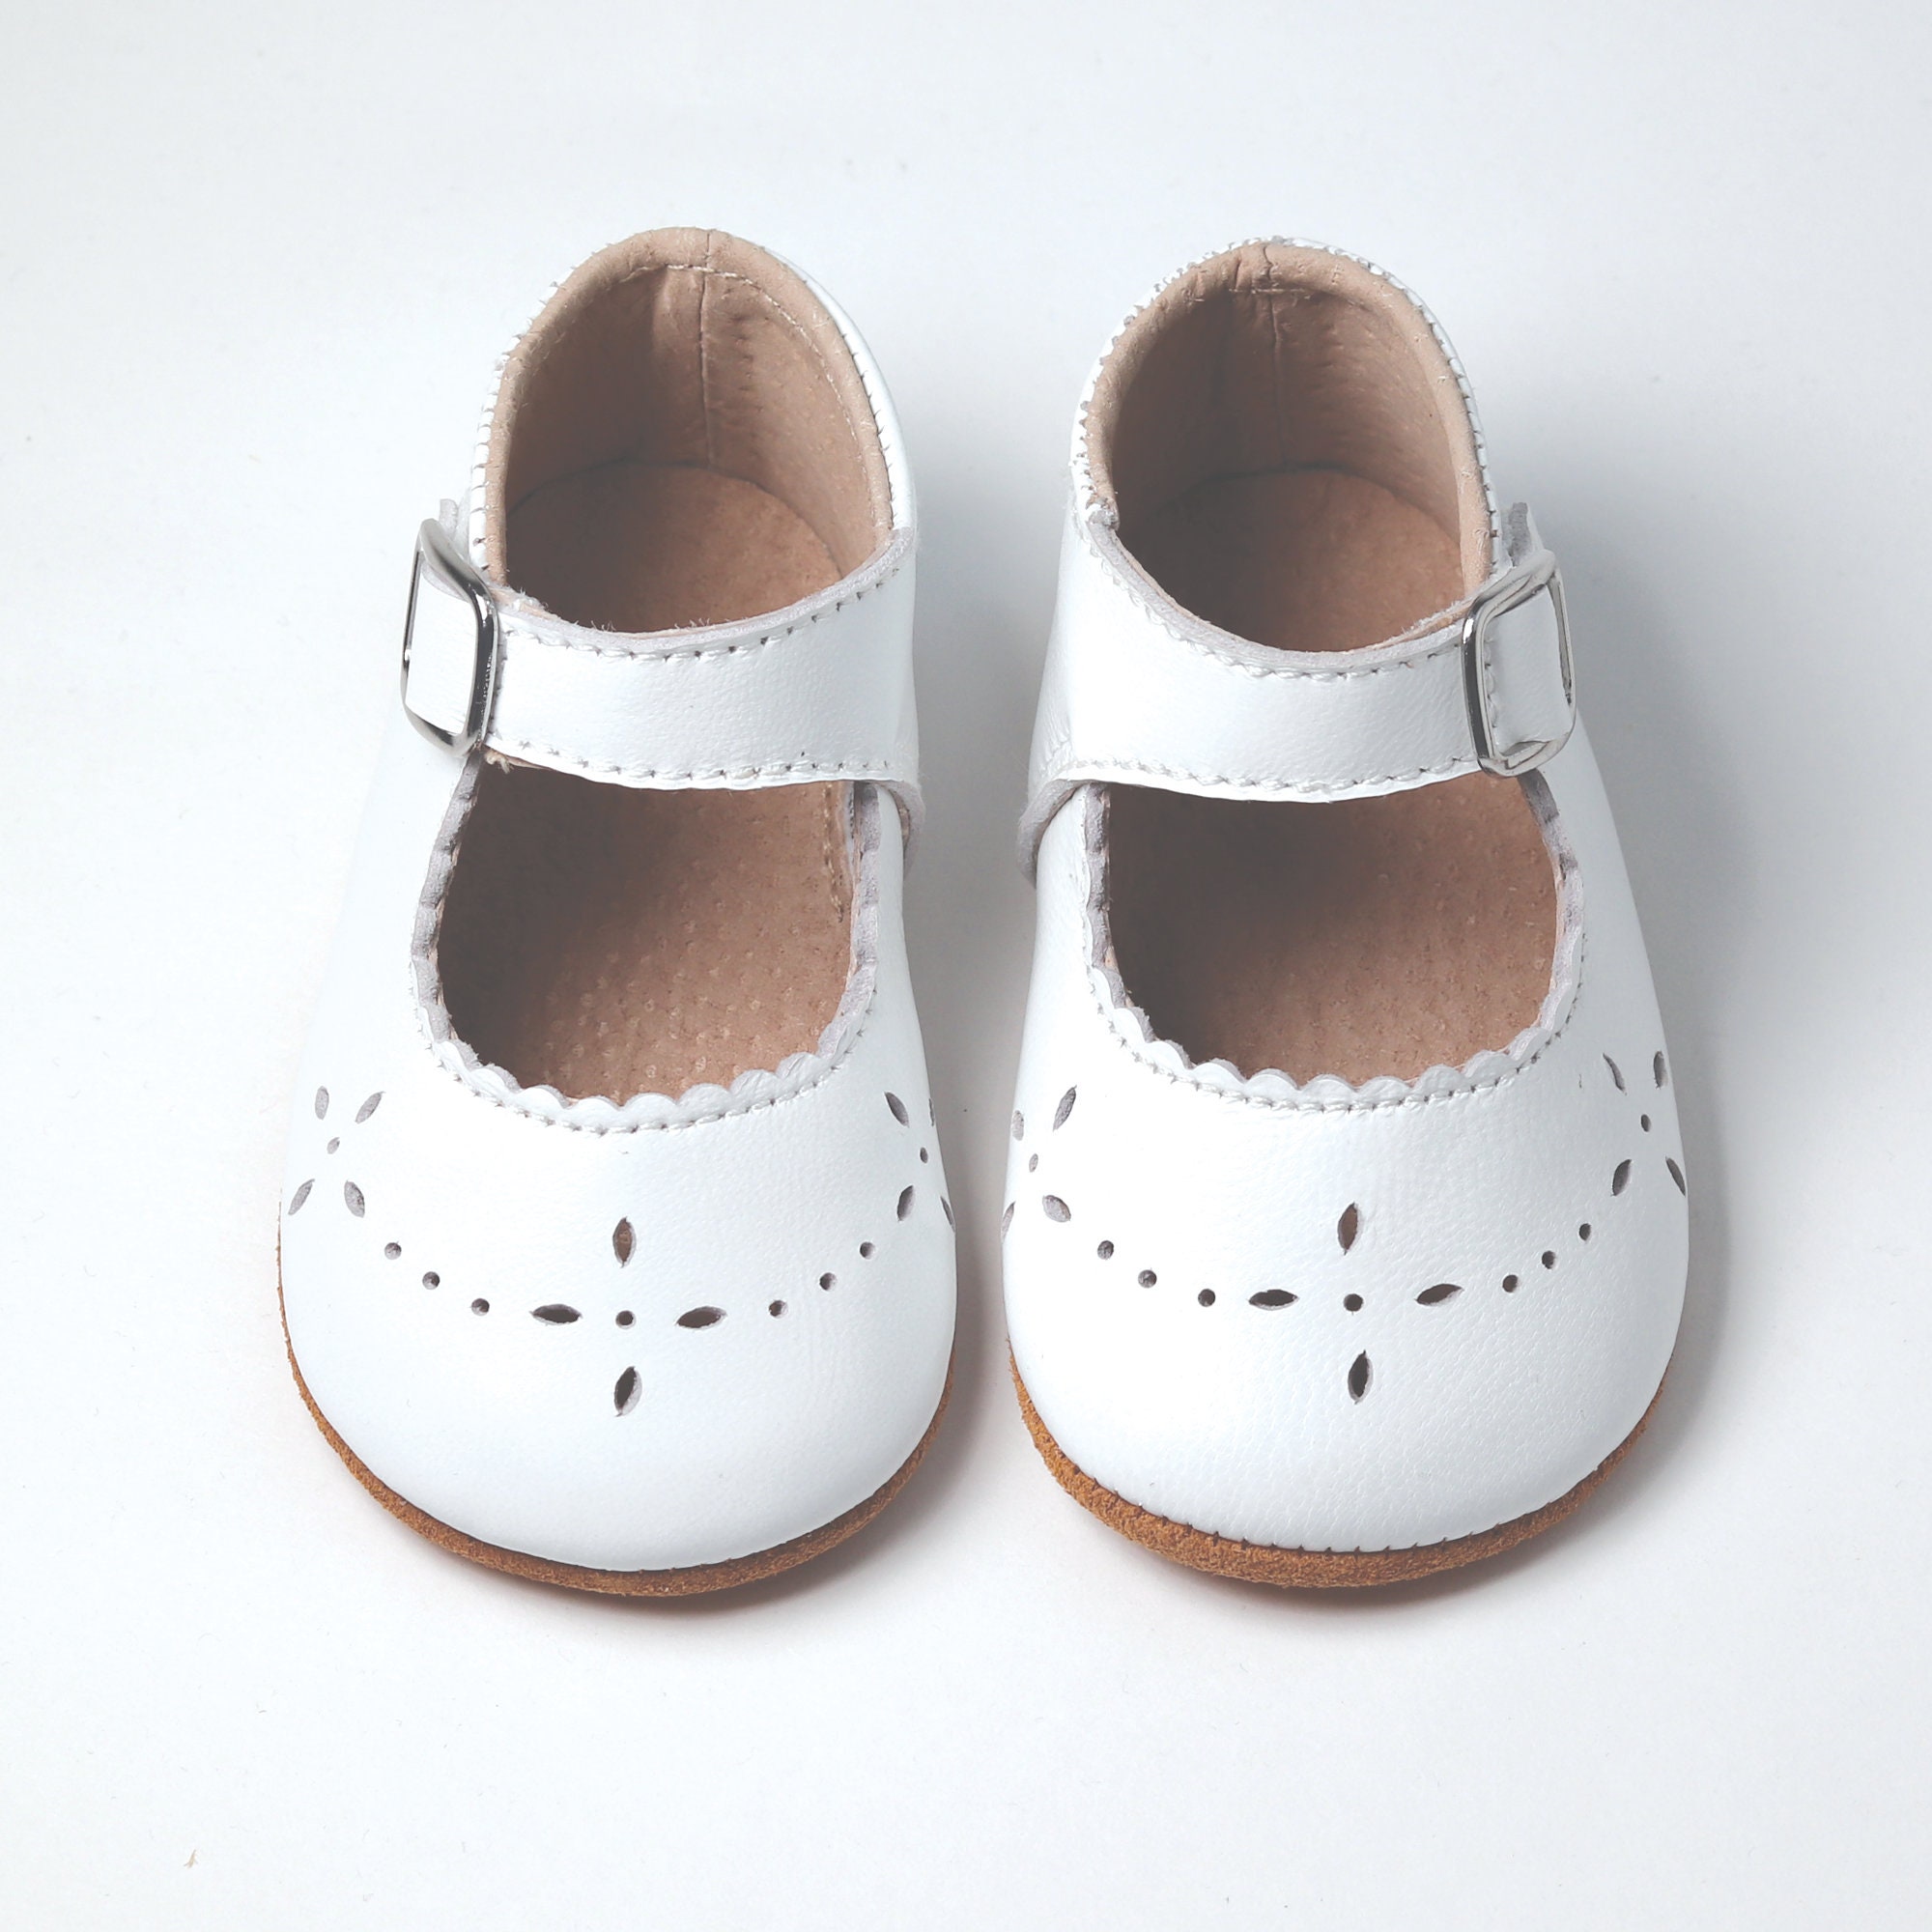 Blanco encantador Zapatos de niña de flores Hecho a mano Mary Jane Baby Girl Shoes 100% Cuero Zapatos de bautismo Niño pequeño Zapatos de bautismo Zapatos Zapatos para niña Zapatos 